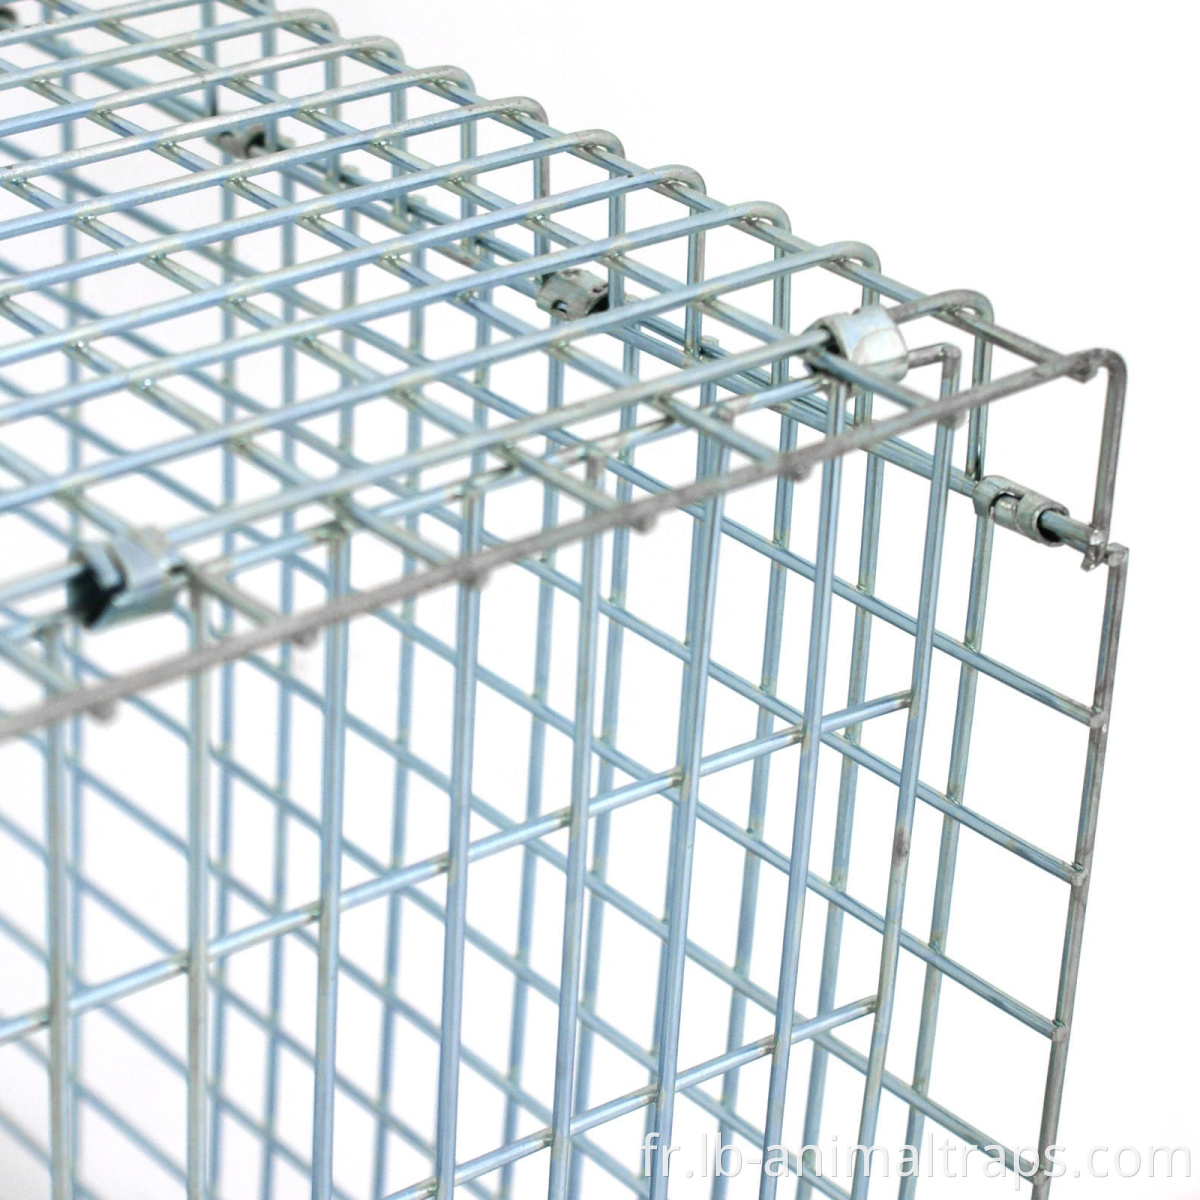 Vente chaude Liebang Marten Trap Cages à vendre Supply usine